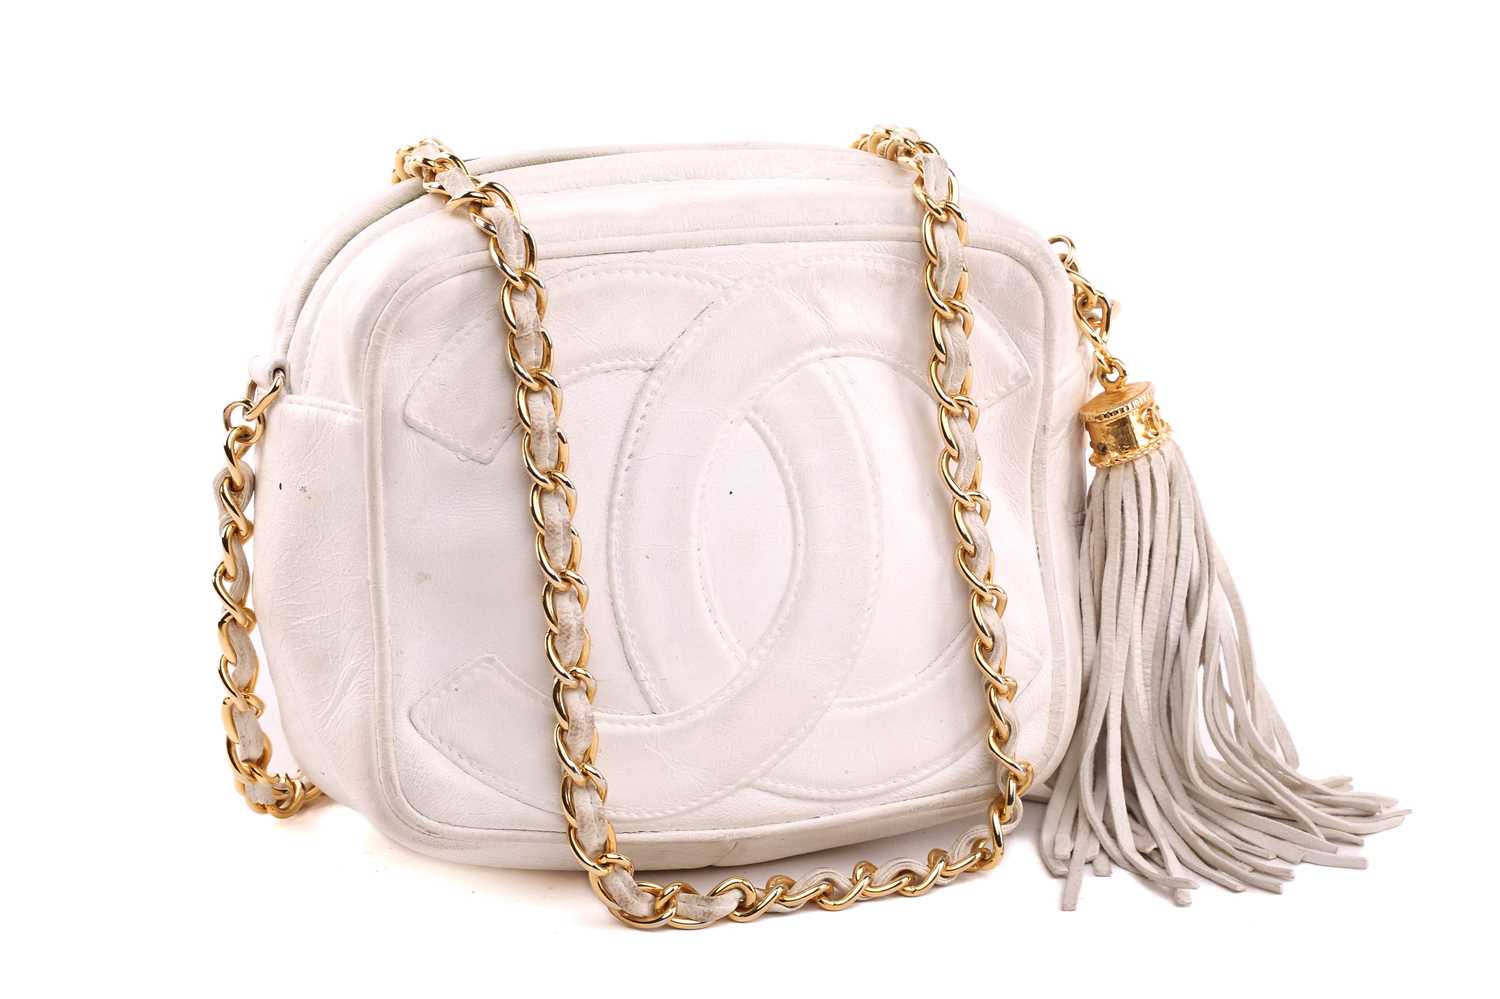 Chanel - a mini camera bag in white leather, circa 1986, interlocking 'CC' logo appliqué on the - Image 2 of 9